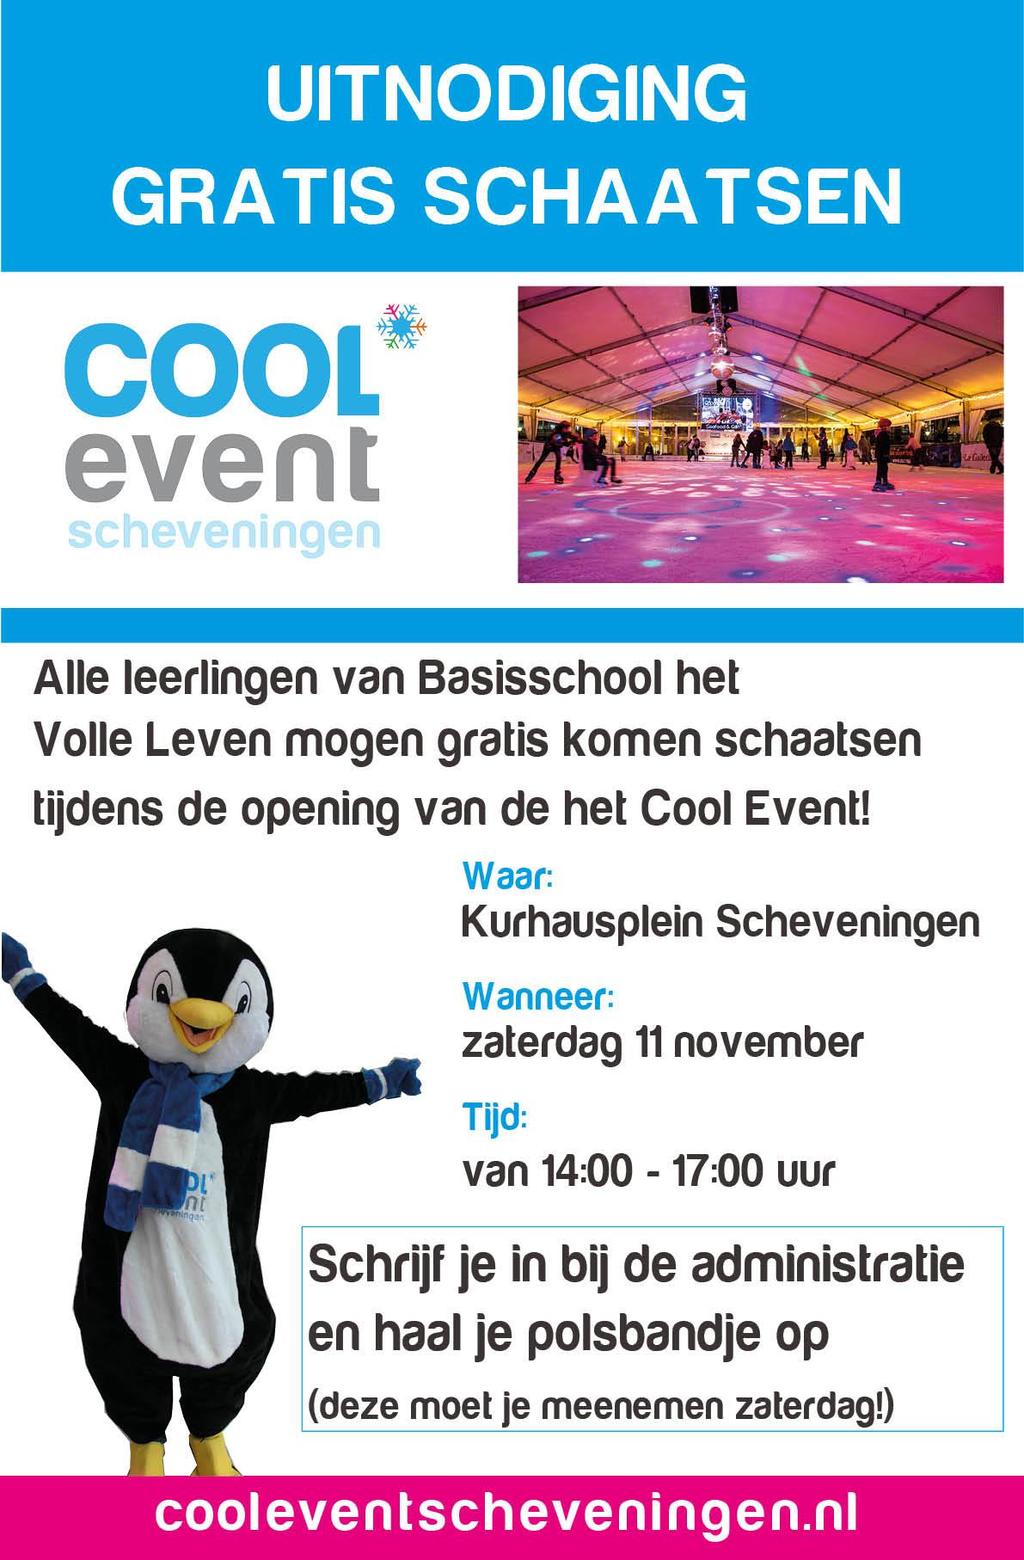 Gratis schaatsen Aanstaande zaterdag 11 november kan er gratis geschaatst worden op het Kurhausplein. Dit kan van 14.00-15.30 uur en van 15.30-17.